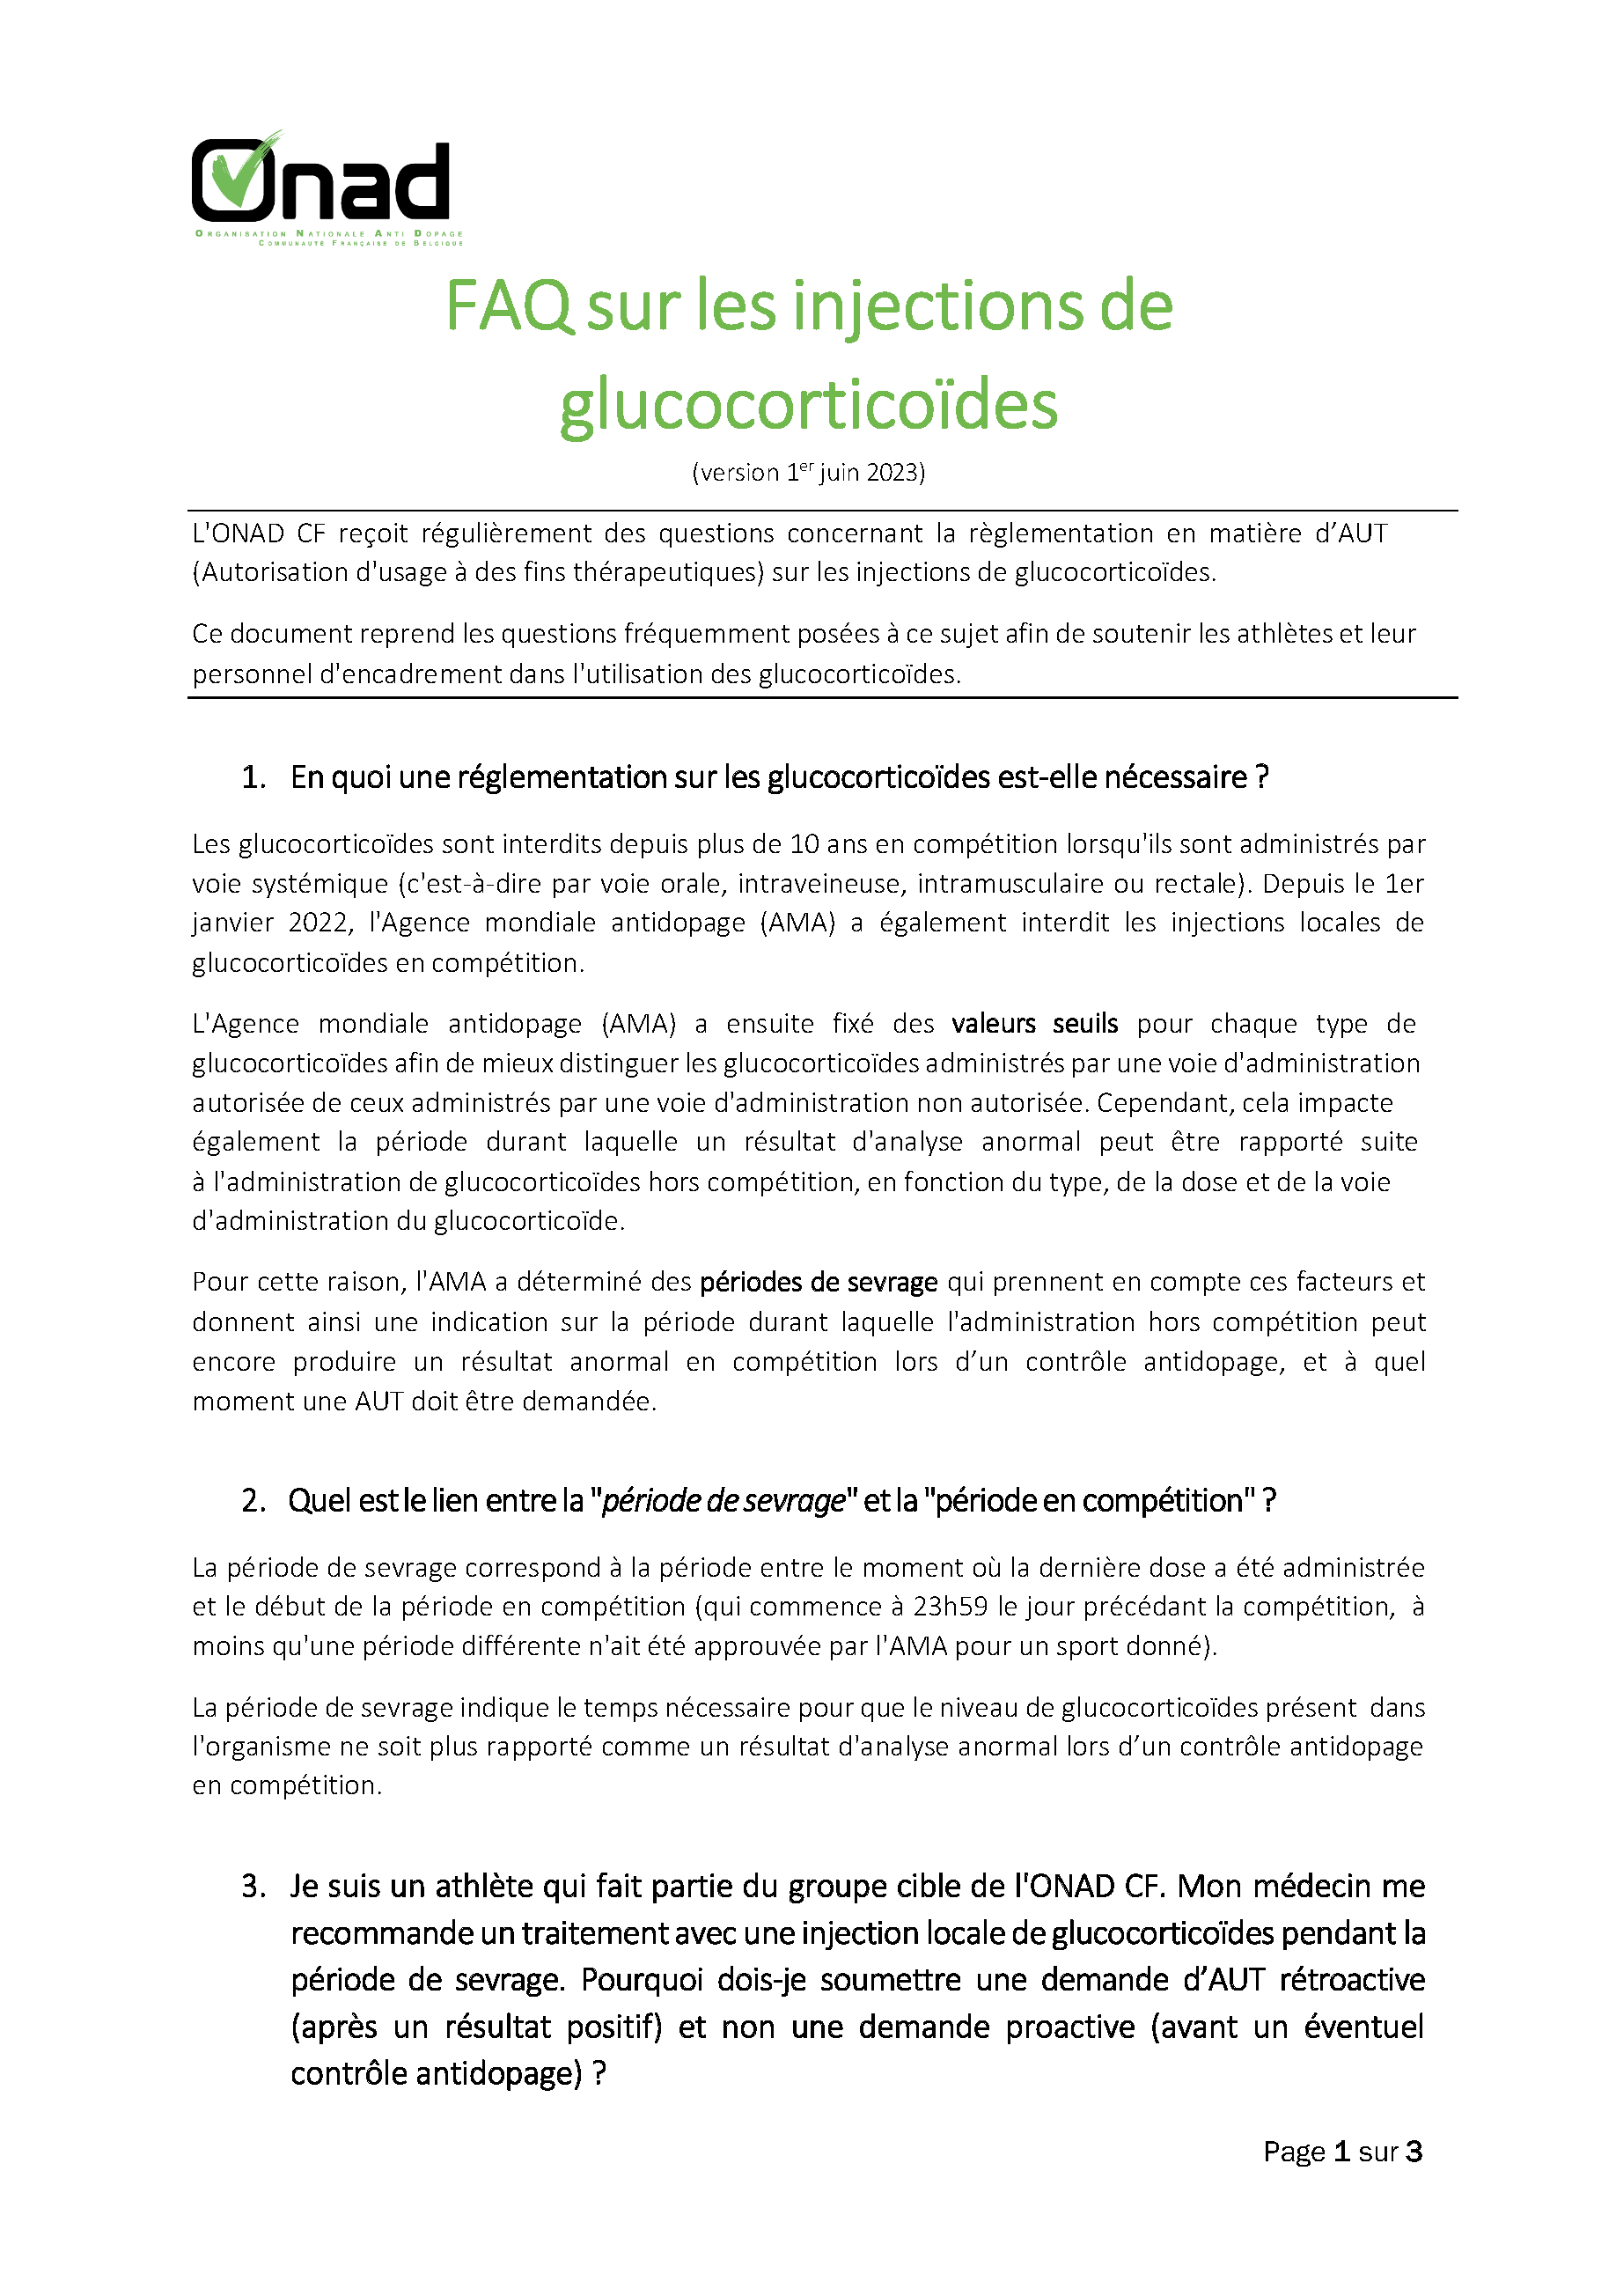 Lien vers fiche FAQ injection glucocorticoïdes (document PDF à télécharger)